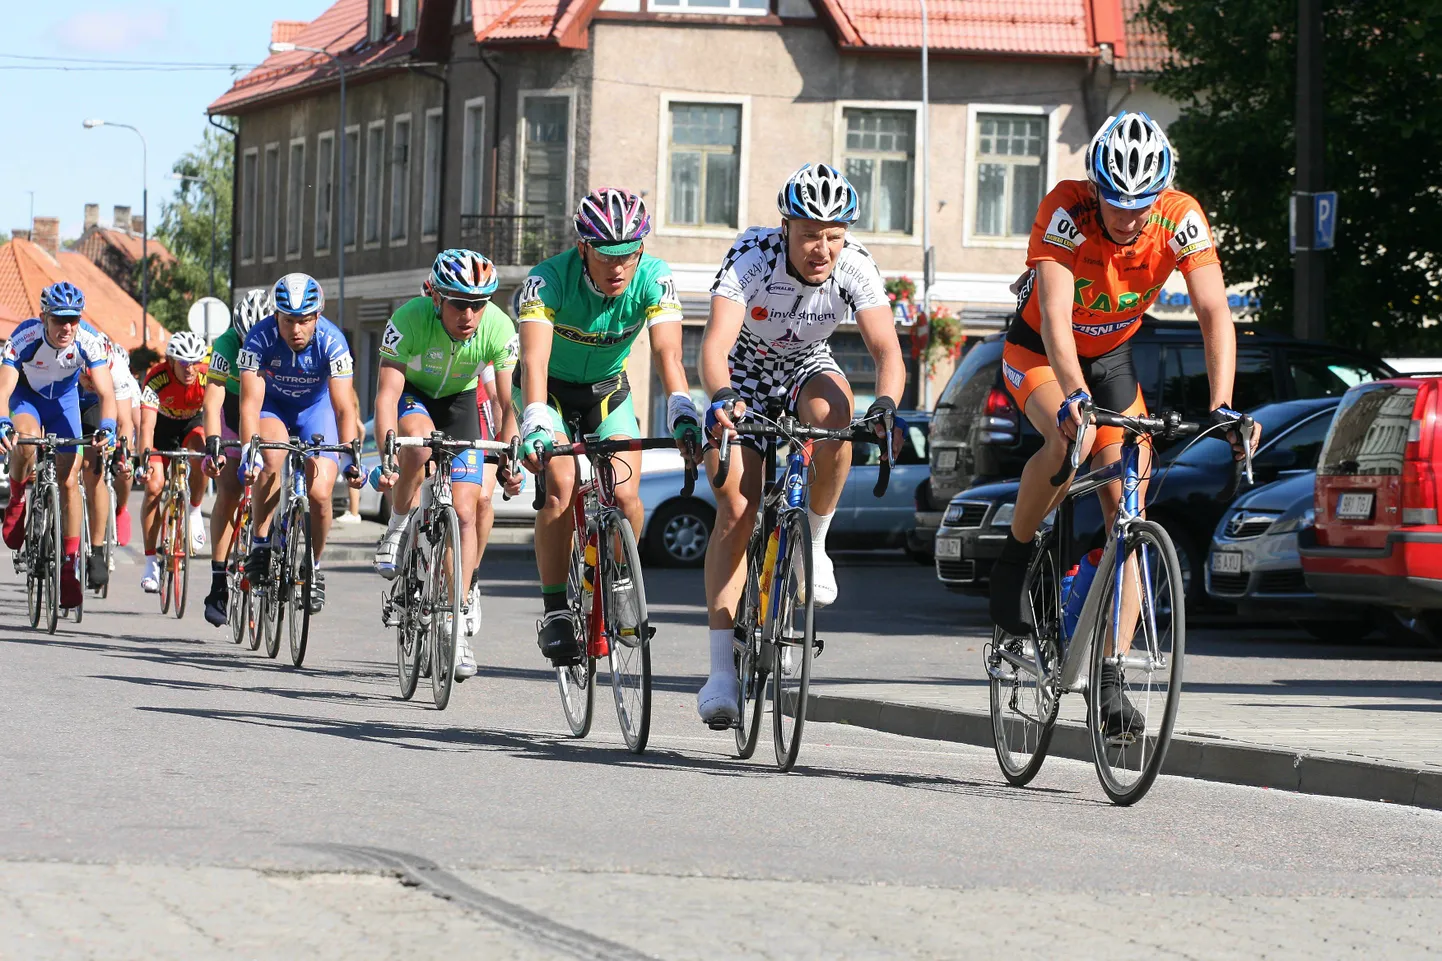 Reedest pühapäevani peetakse Viljandis ratturite Eesti maanteesõidu meistrivõistlusi